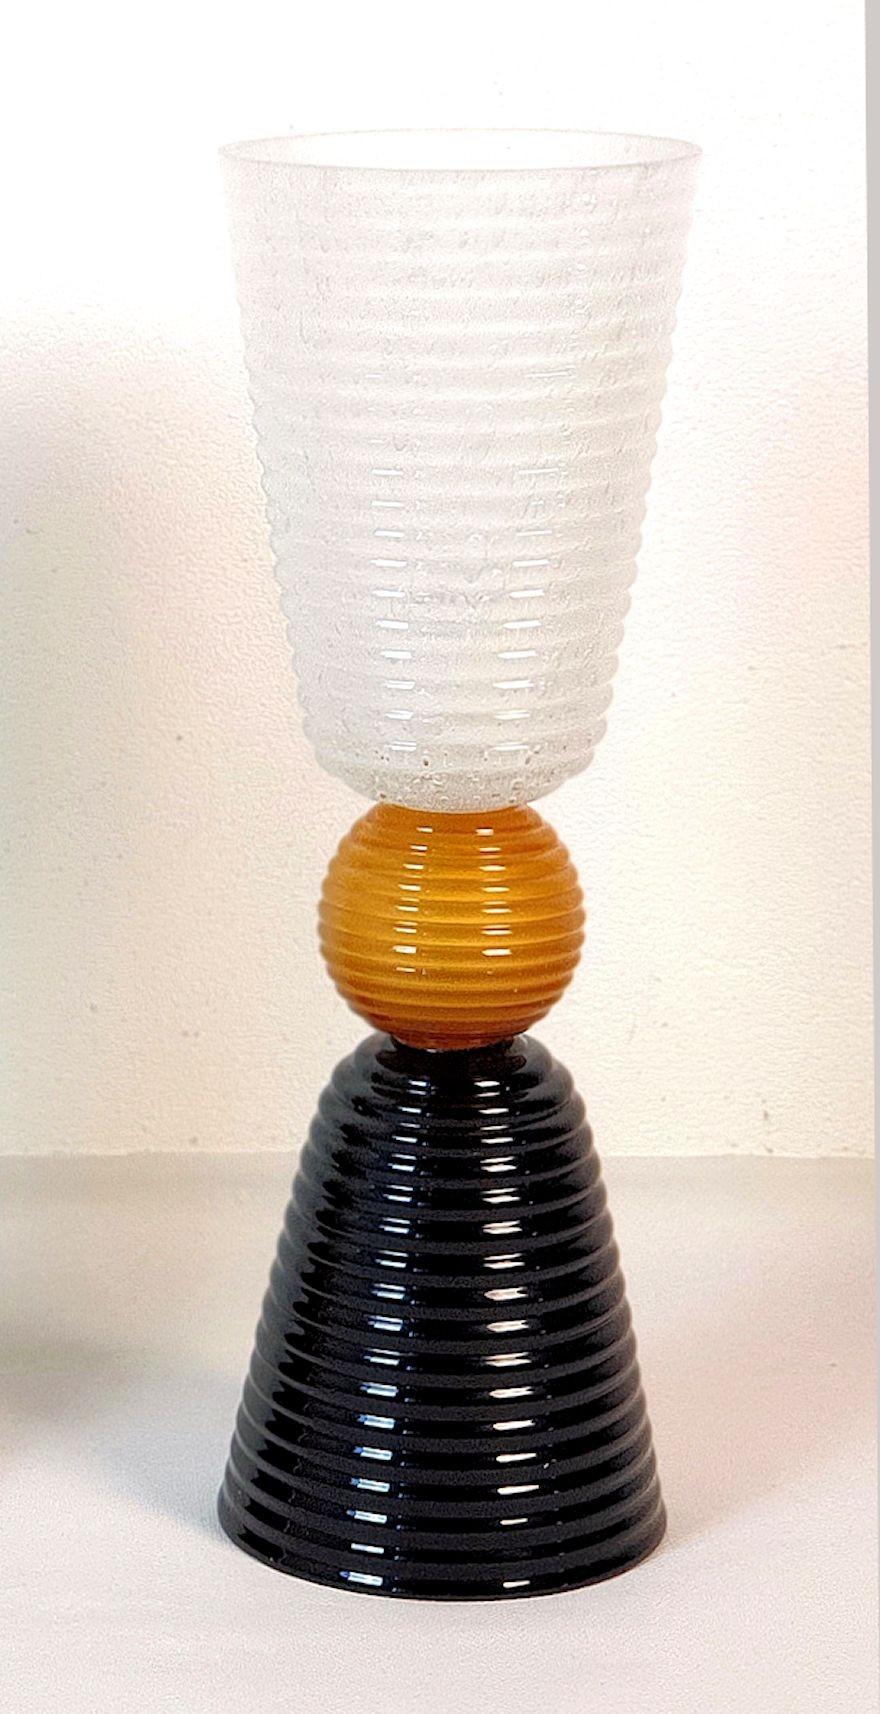 Lampe de table unique en verre de Murano, Italie, années 1980.
La lampe de table italienne est composée de verre de Murano noir et blanc givré et nervuré, avec une boule centrale en verre de Murano de couleur miel.
L'ampoule est nichée dans le vase